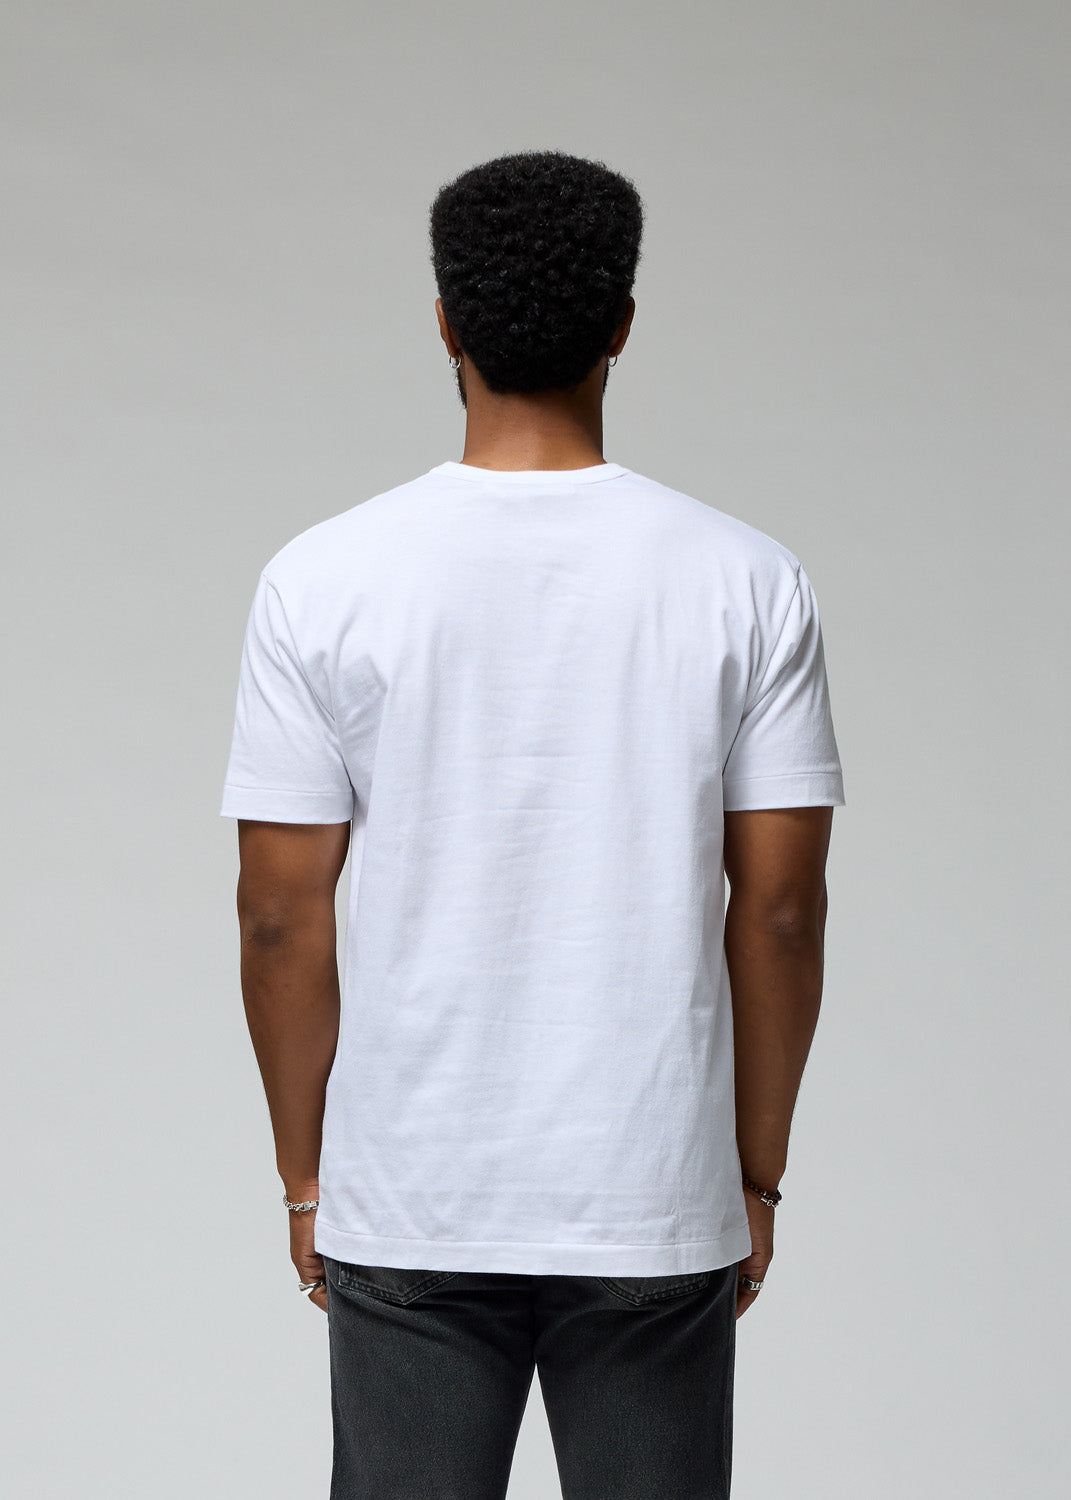 Comme des Garçons - White Heart Multi Logo T-Shirt | 1032 Space S